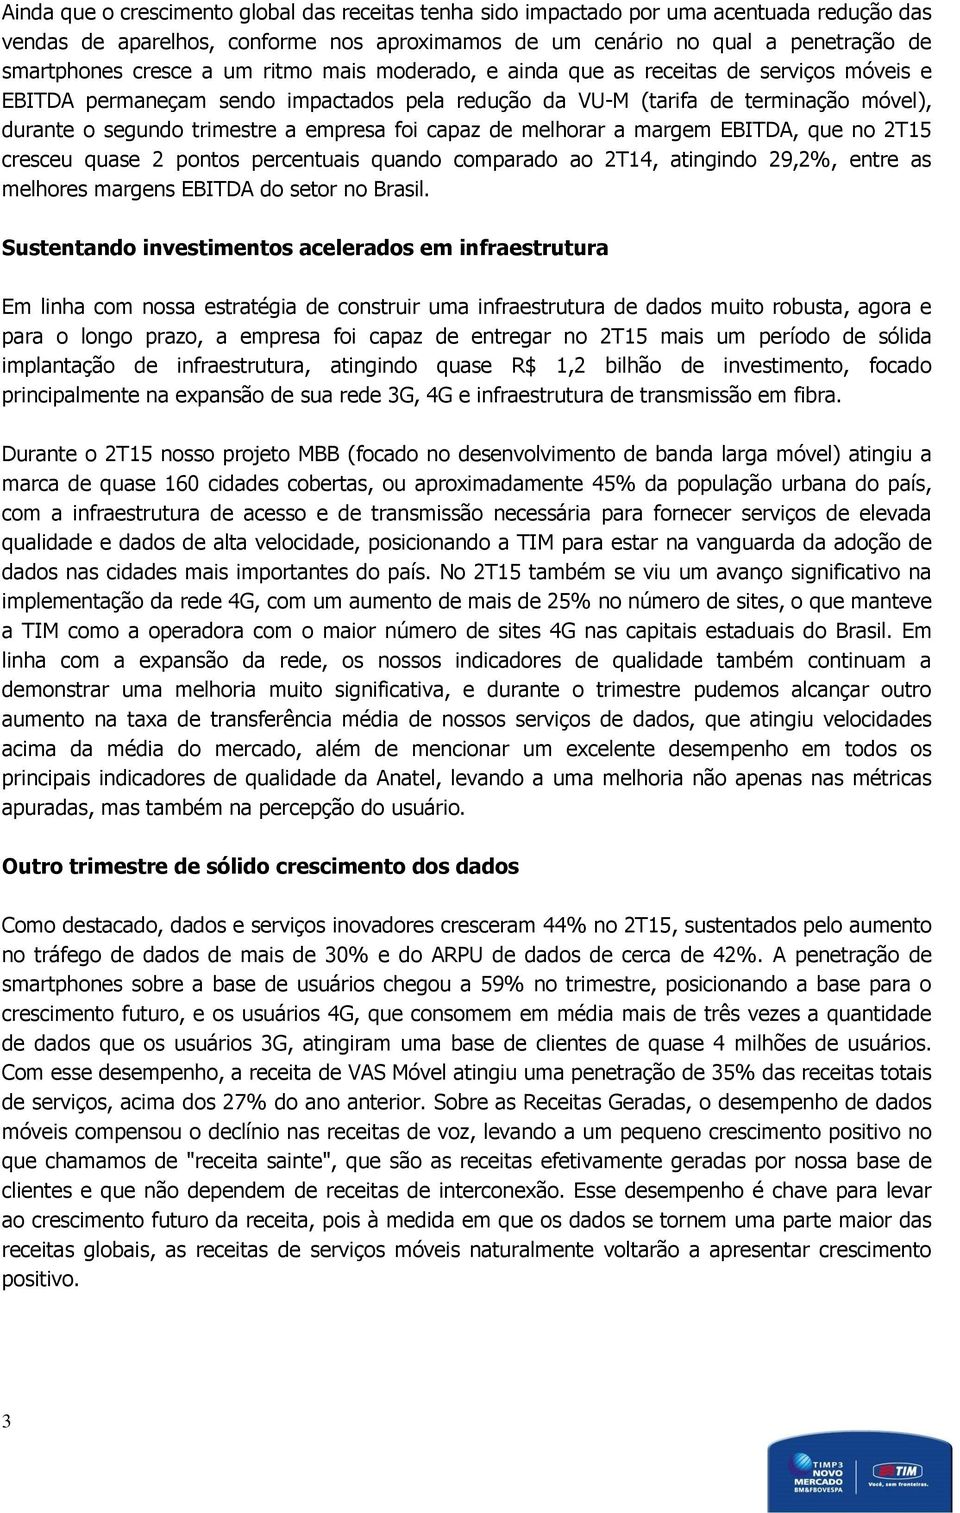 capaz de melhorar a margem EBITDA, que no 2T15 cresceu quase 2 pontos percentuais quando comparado ao 2T14, atingindo 29,2%, entre as melhores margens EBITDA do setor no Brasil.